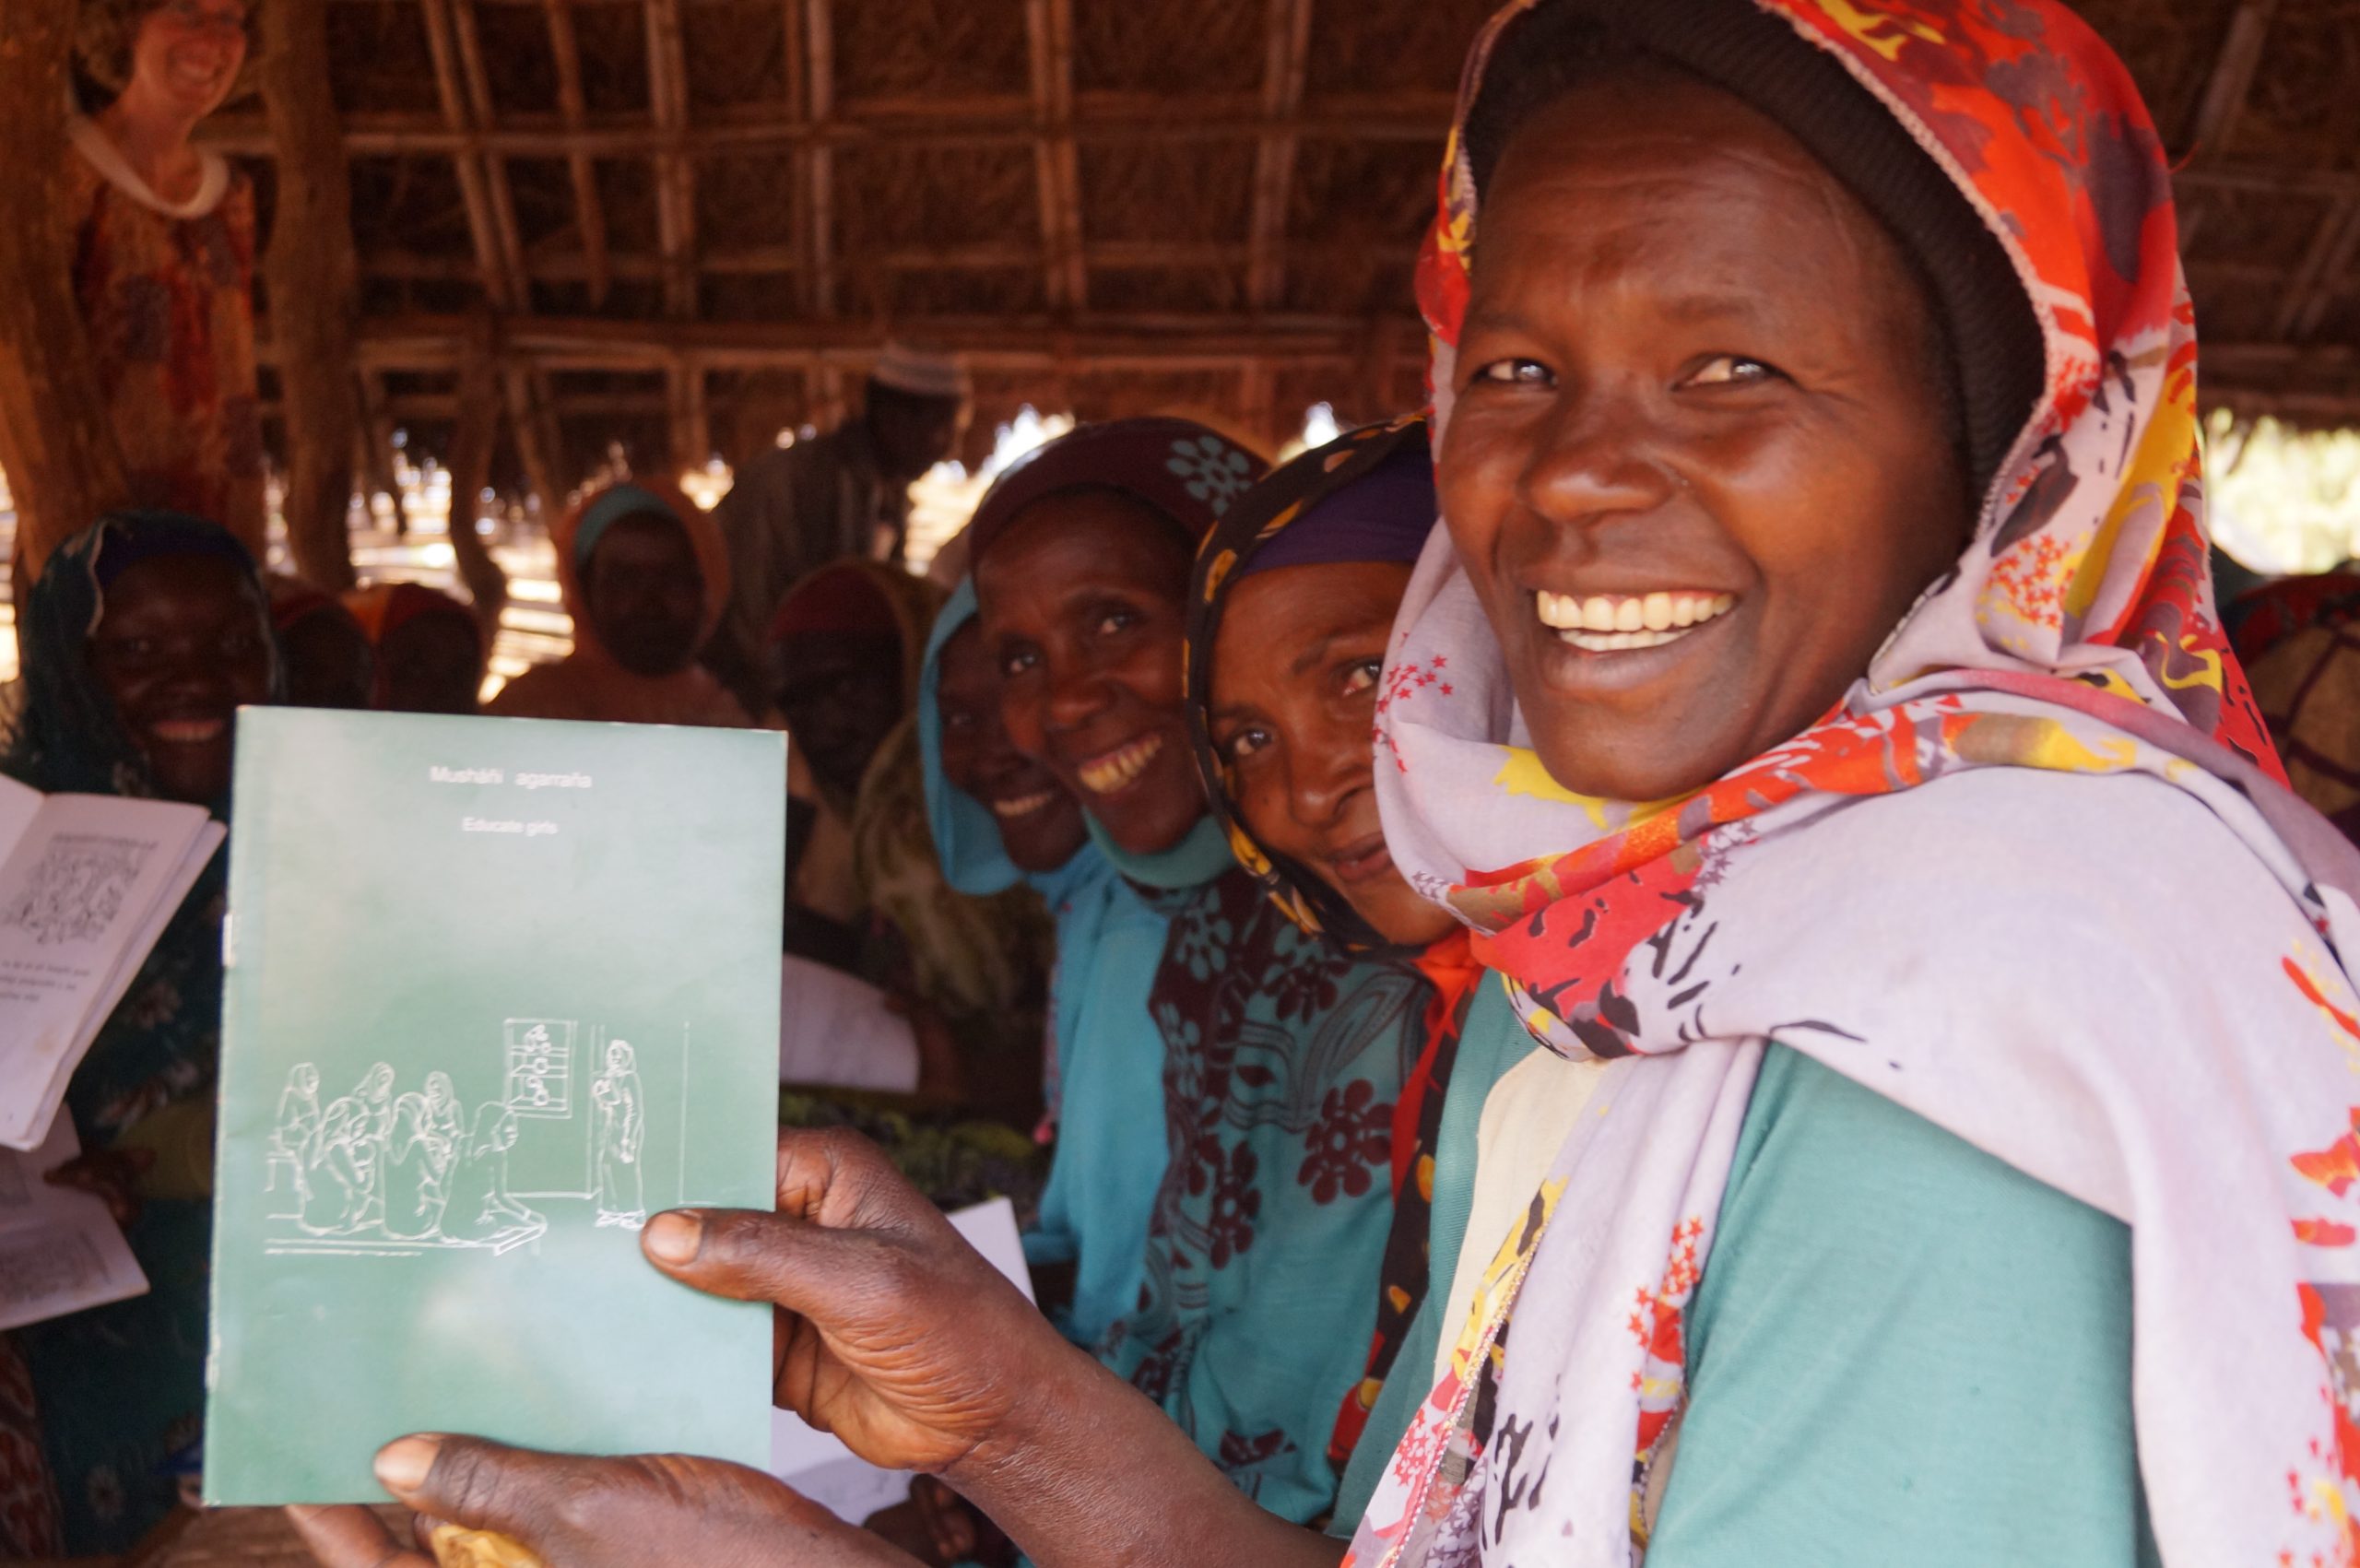 Je bekijkt nu Moedertaalonderwijs in Ethiopië: meer mogelijkheden voor minderheden